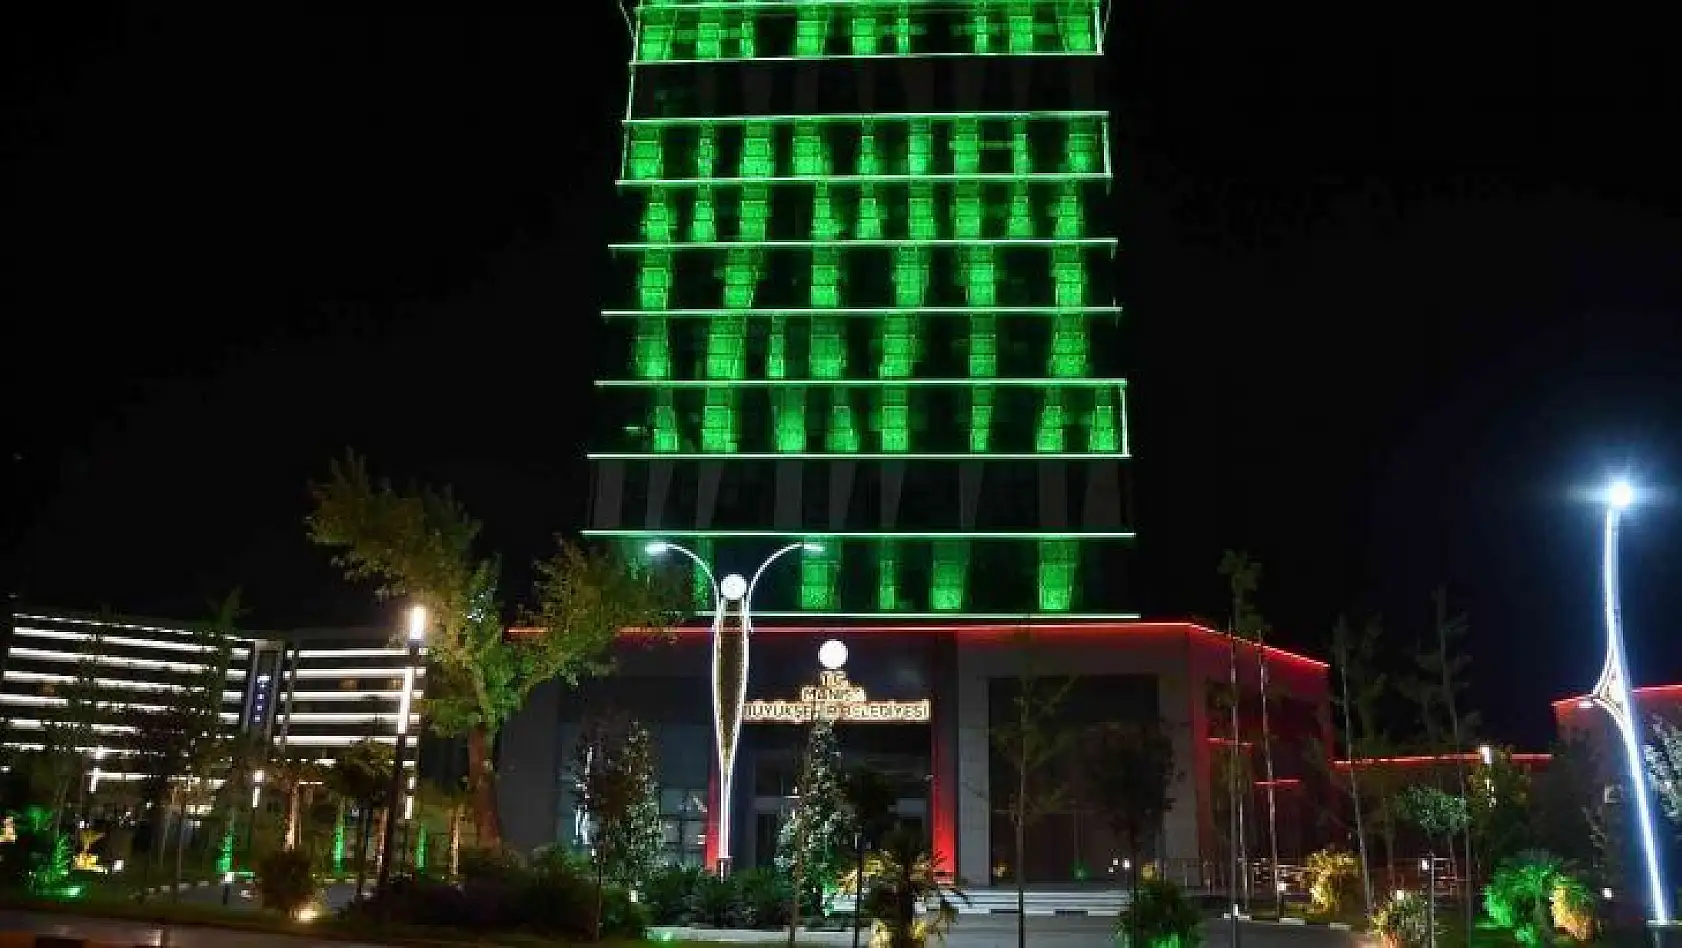 Manisa Büyükşehir Belediye binası çölyaklılar için yeşil renge büründü